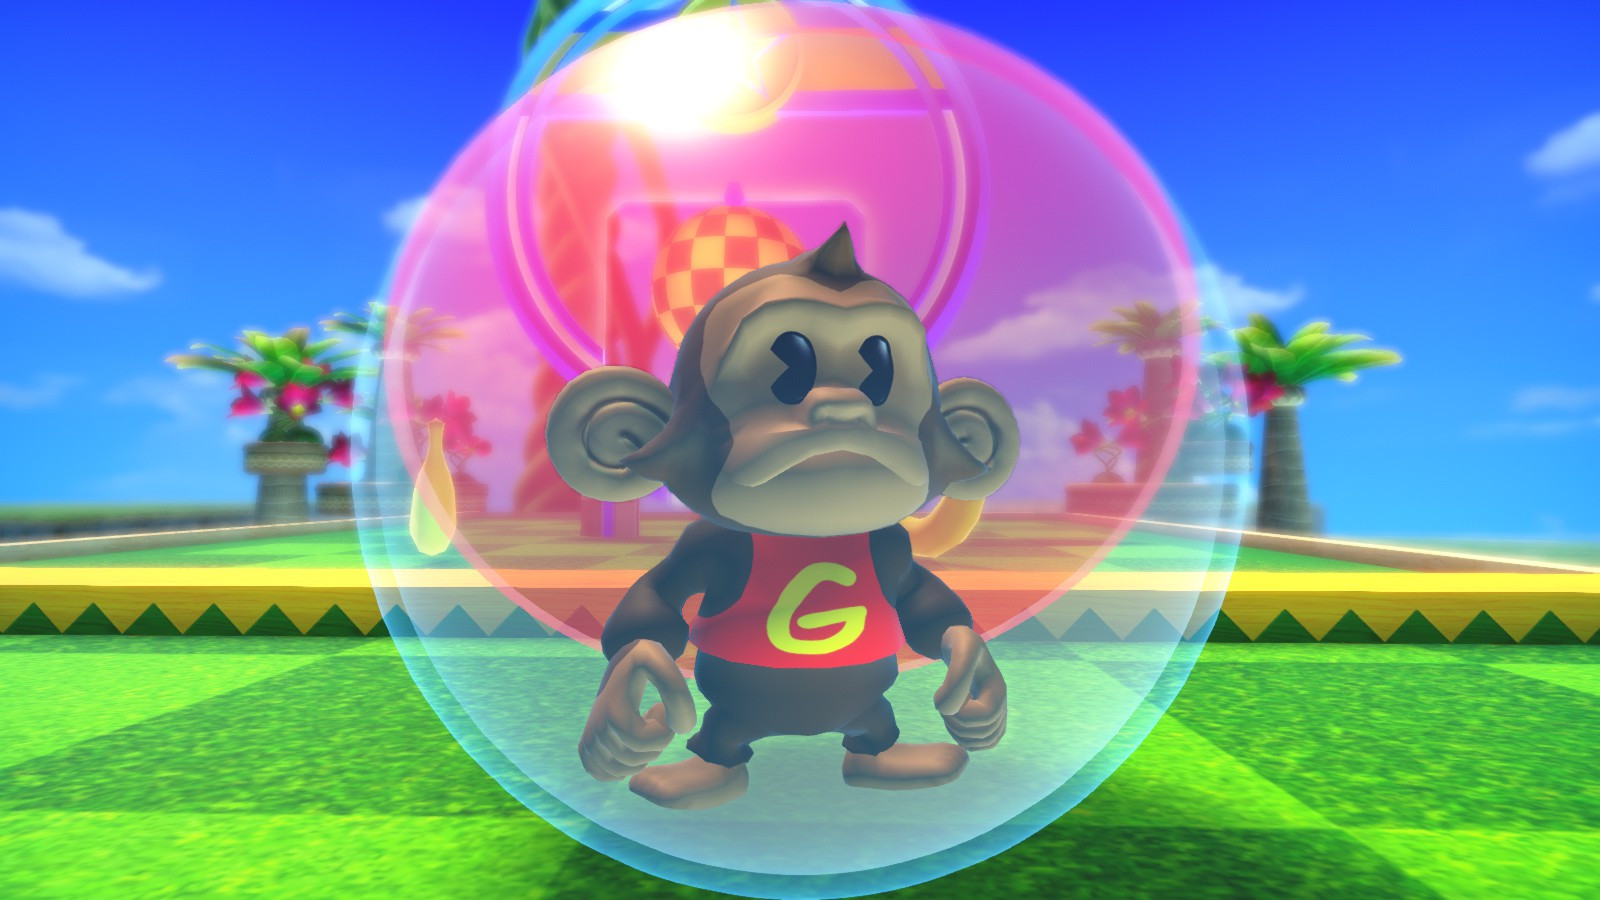 Super Monkey Ball Banana Mania Game Control Config + Modding Scene + Soundtrack - • The Modding Scene [WIP] - F0C9A13